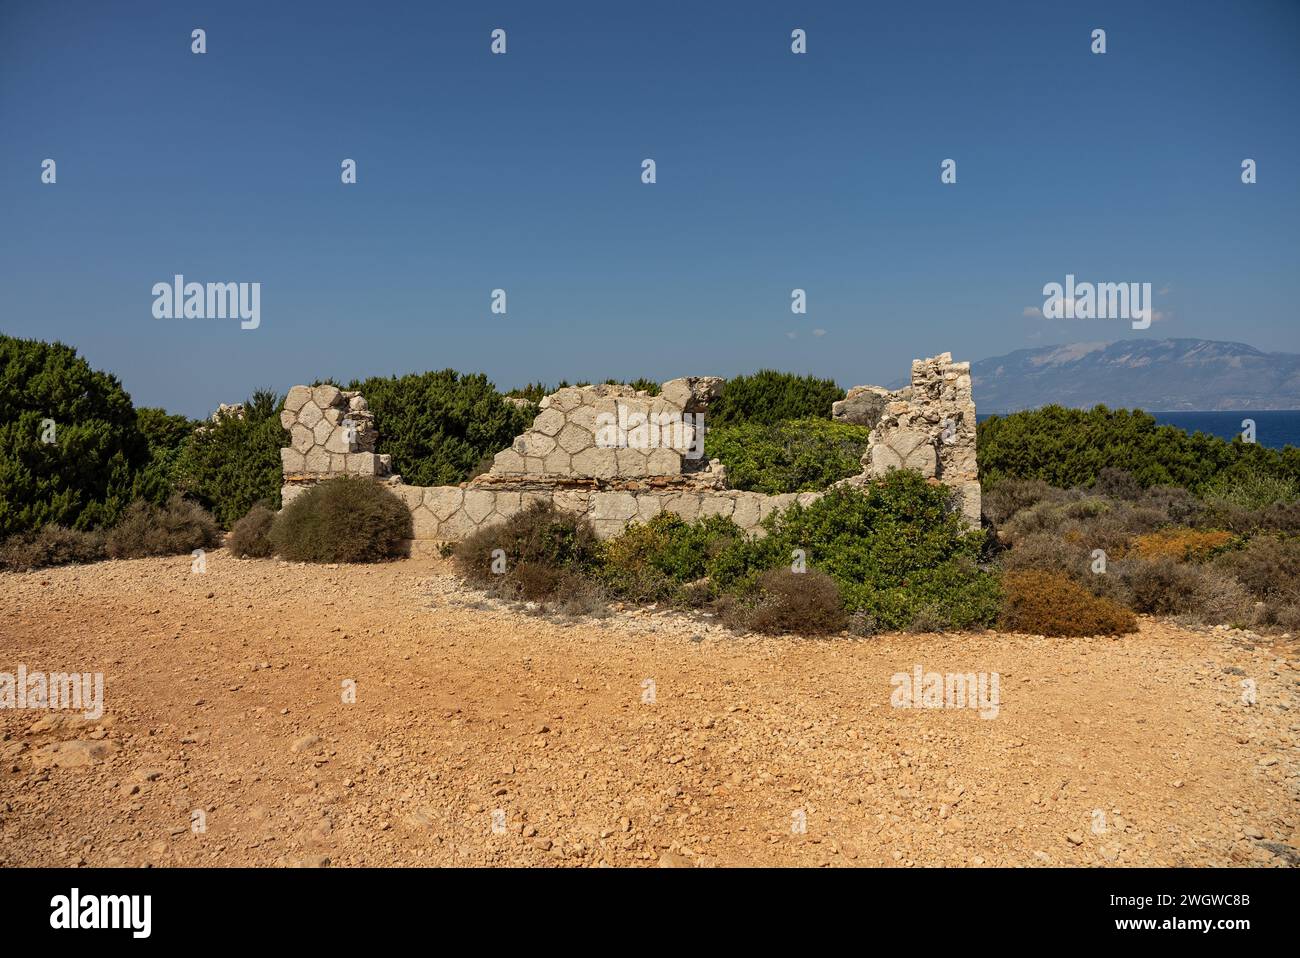 Antiche rovine sul capo Skinari in soleggiata giornata estiva. Isola di Zante, Grecia. Grecia, Zante, strada per il faro di skinari sull'isola di zante a nord c Foto Stock